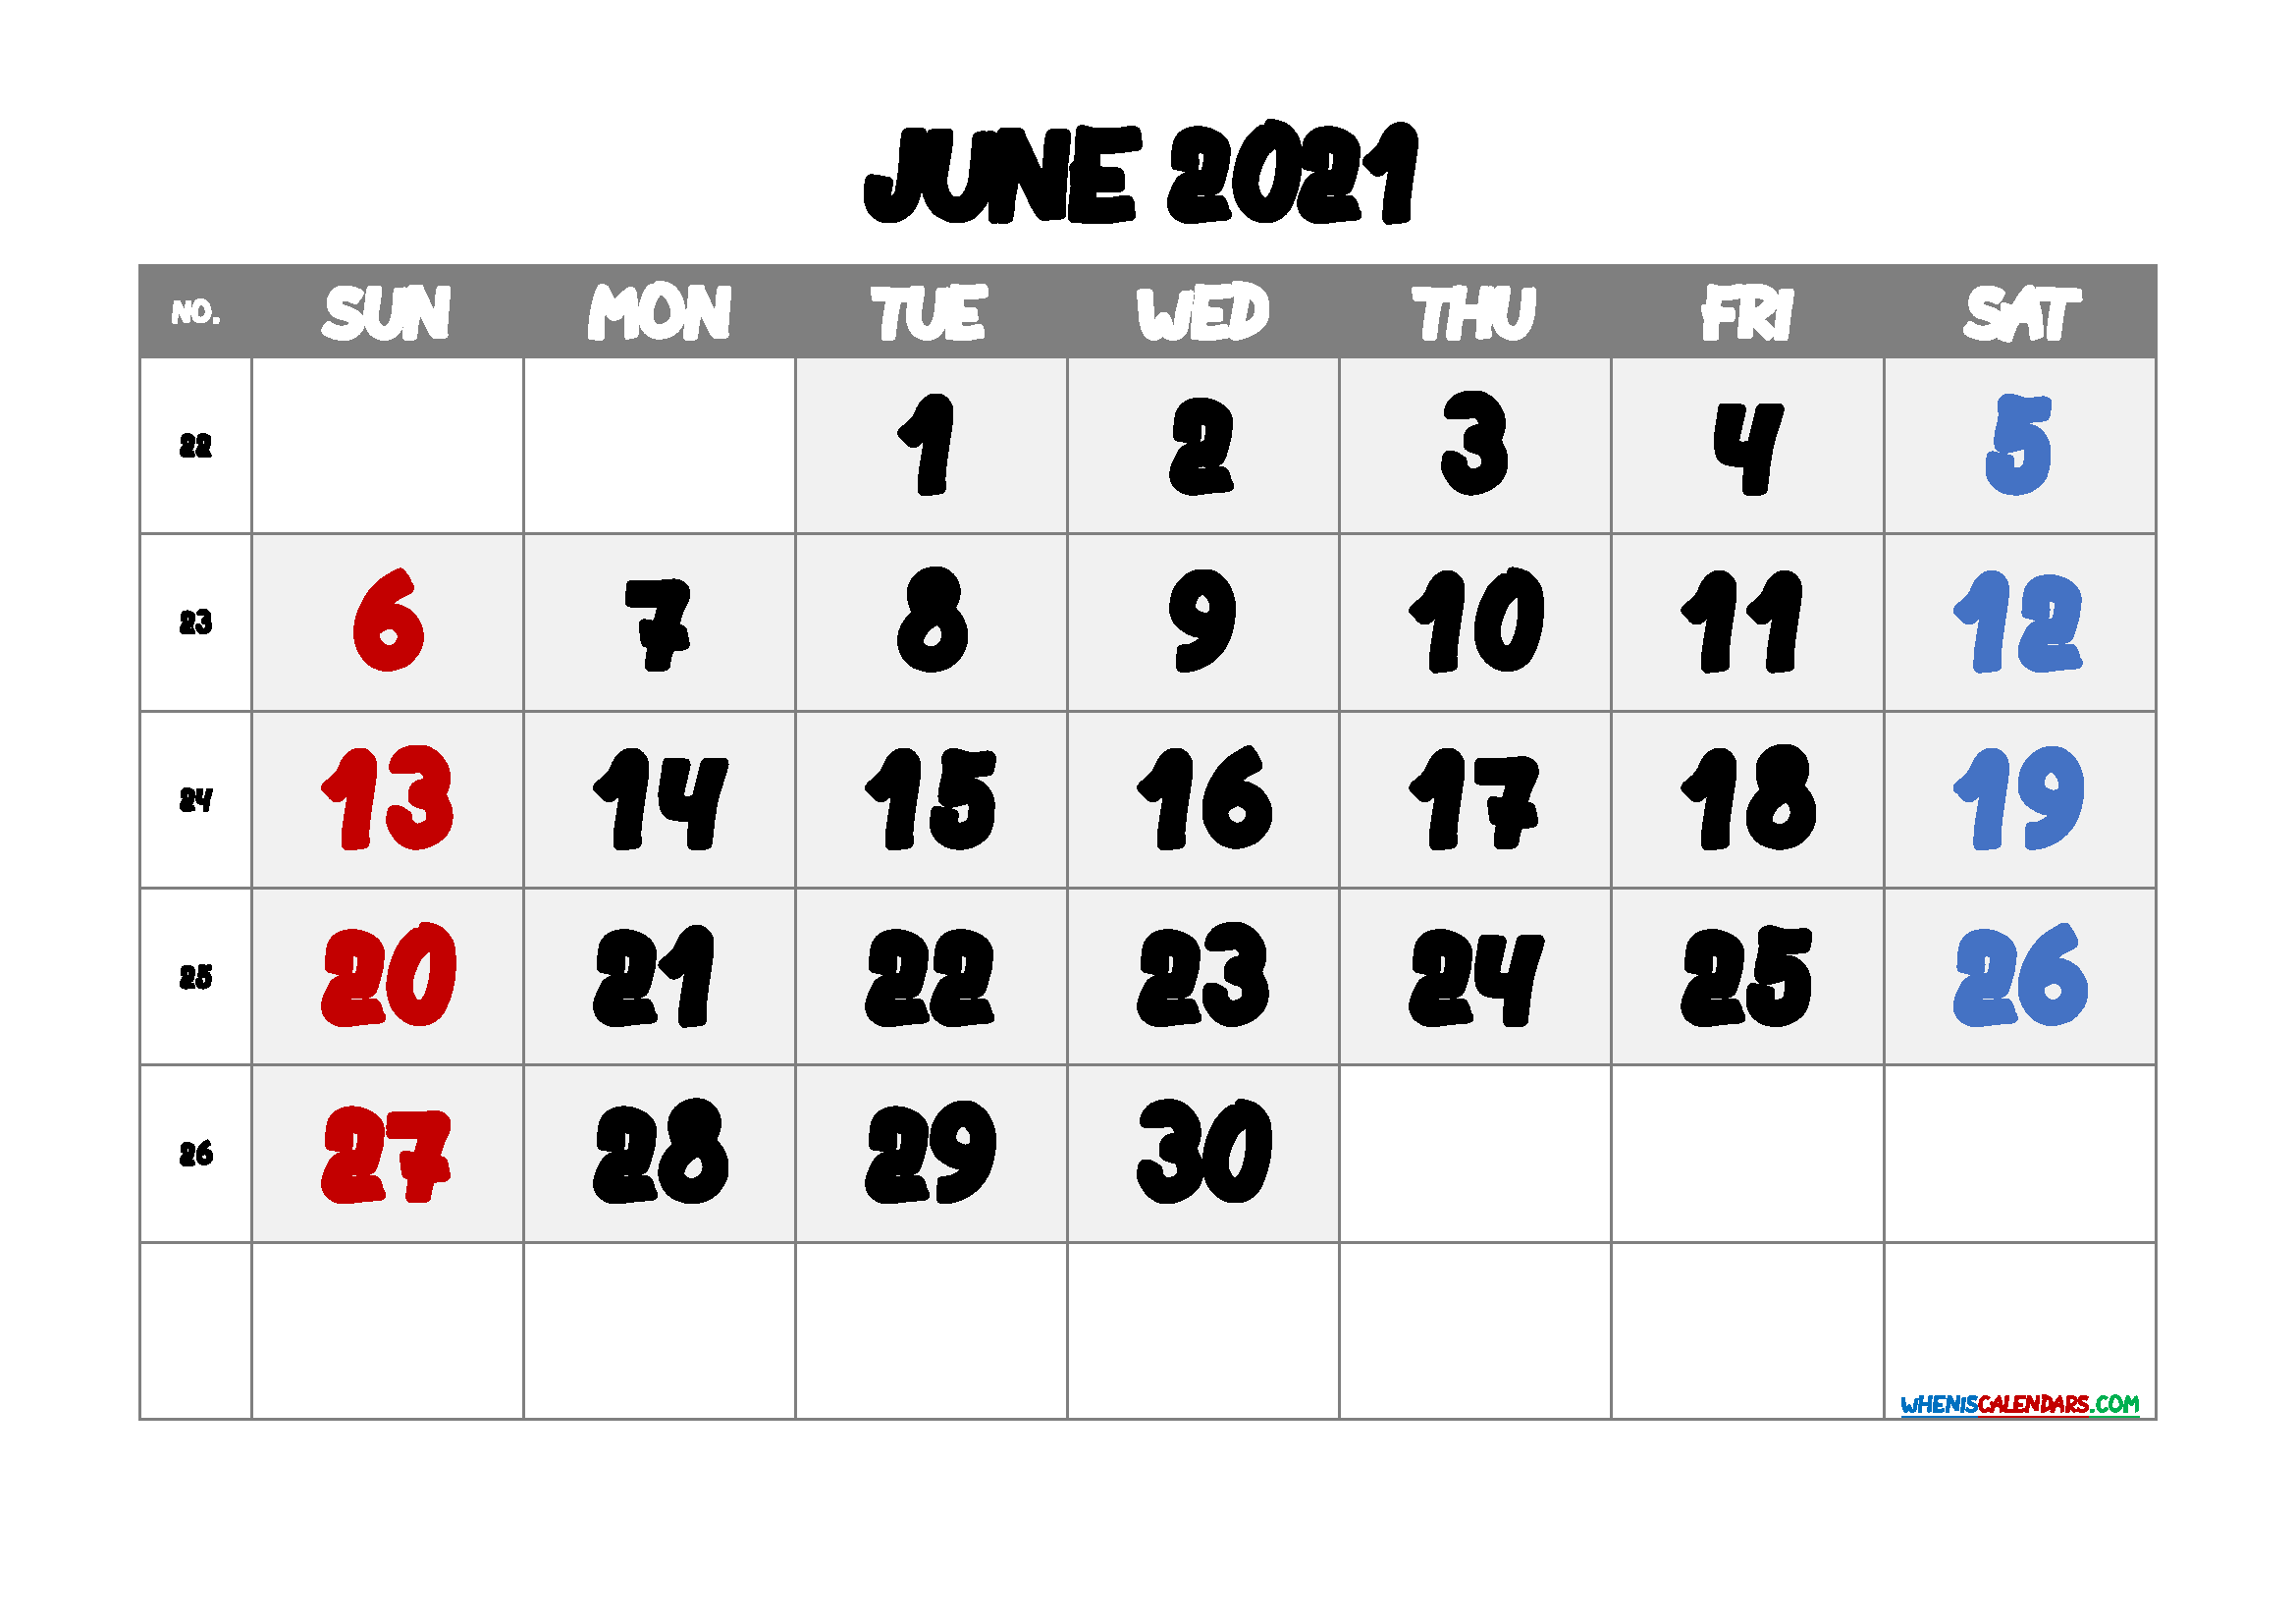 June 2021 Calendar Free Printable